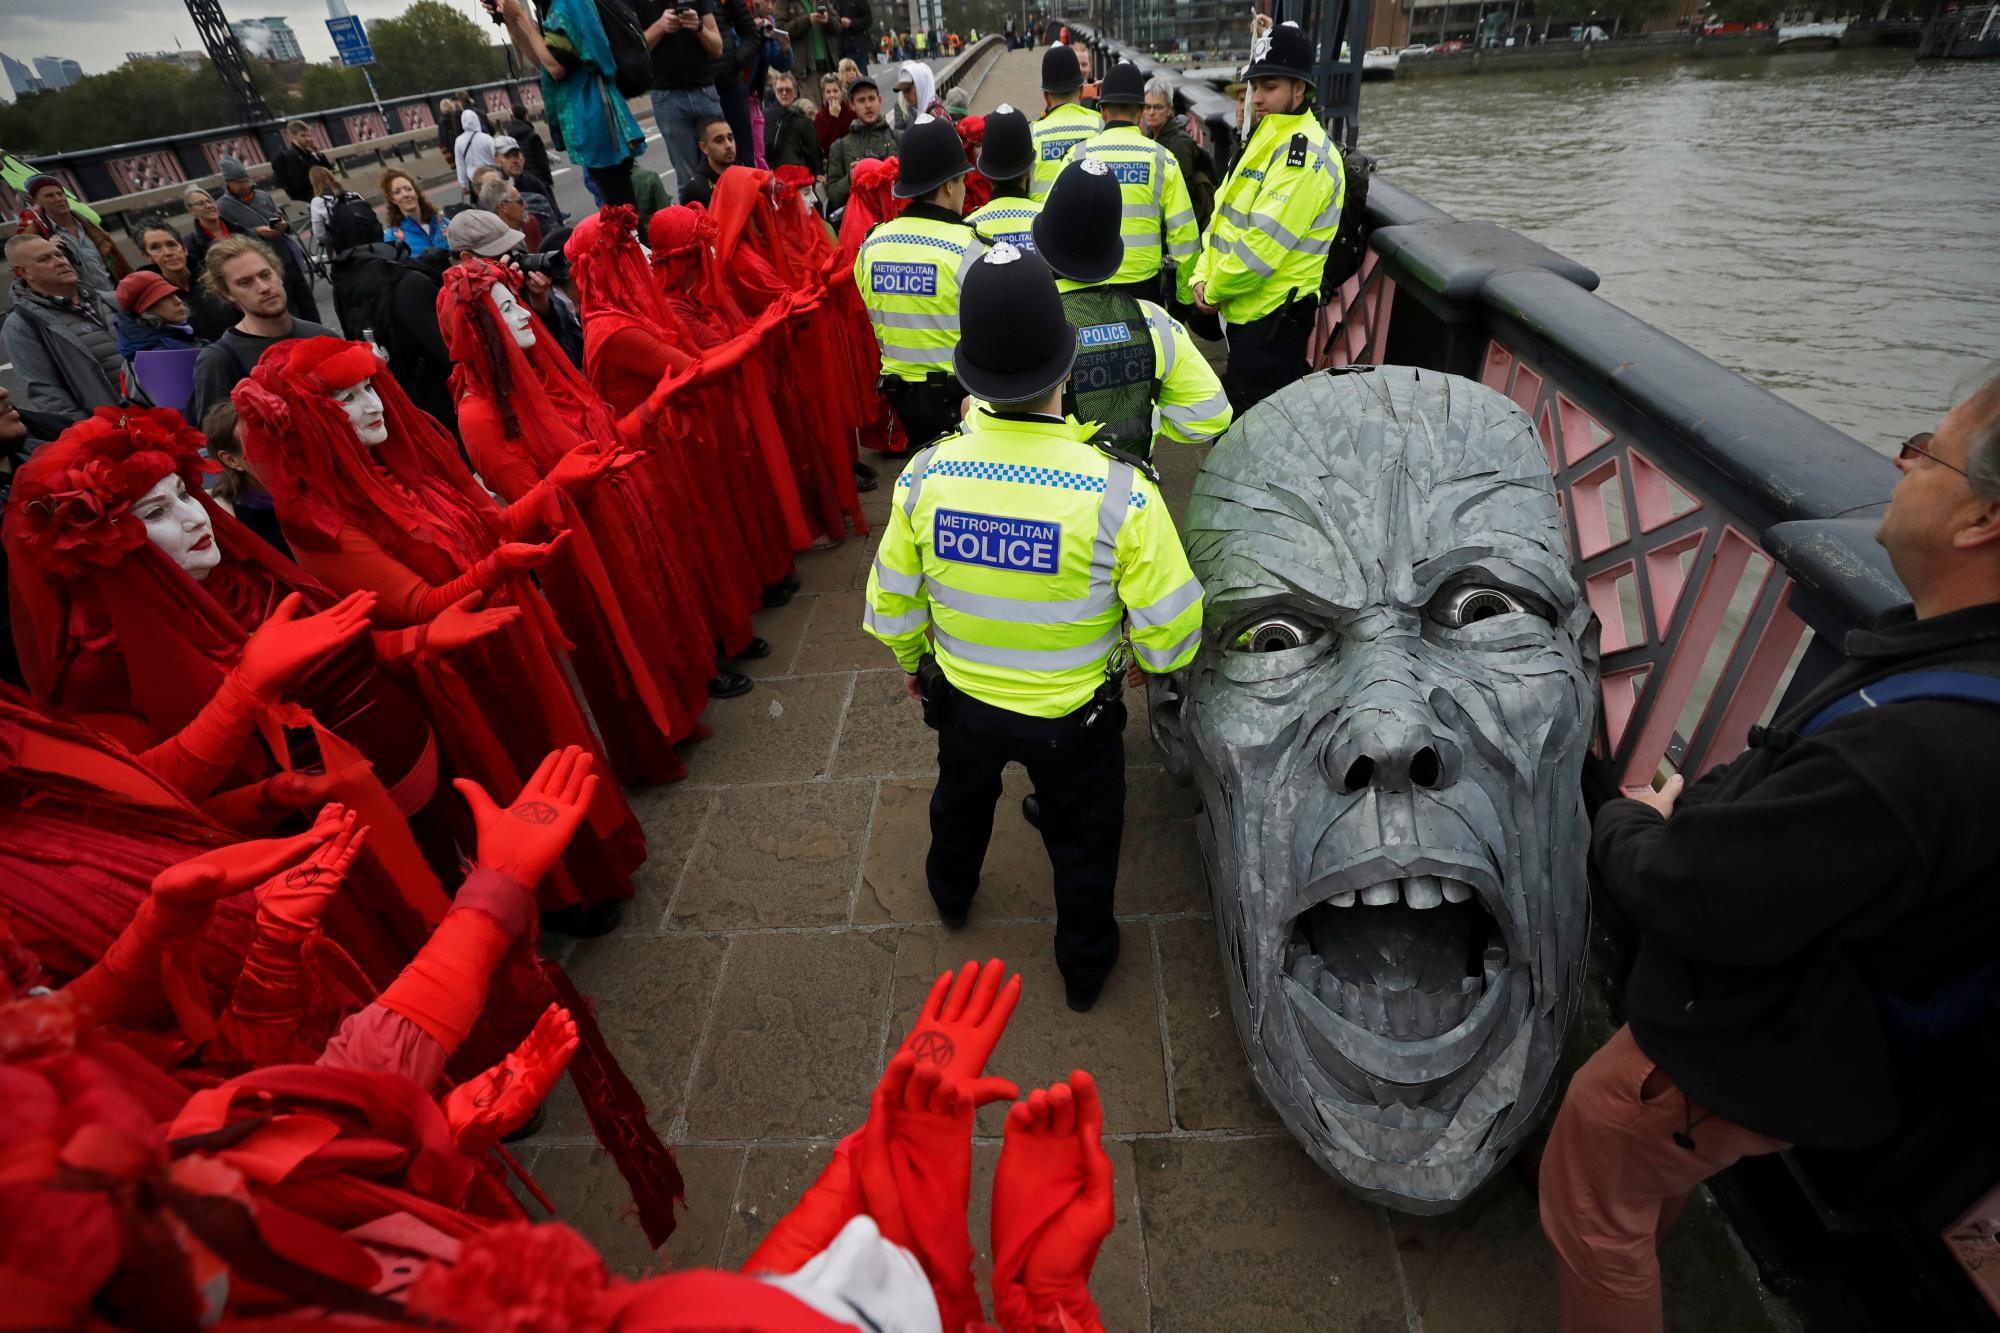 Los manifestantes ambientales se reúnen alrededor de la cabeza de una estatua confiscada por la policía en el puente Lambeth, en el centro de Londres, el lunes 7 de octubre de 2019. Activistas ambientales estaban dispuestos a bloquear las carreteras que conducen al Parlamento británico en un intento de perturbar el corazón del gobierno. 